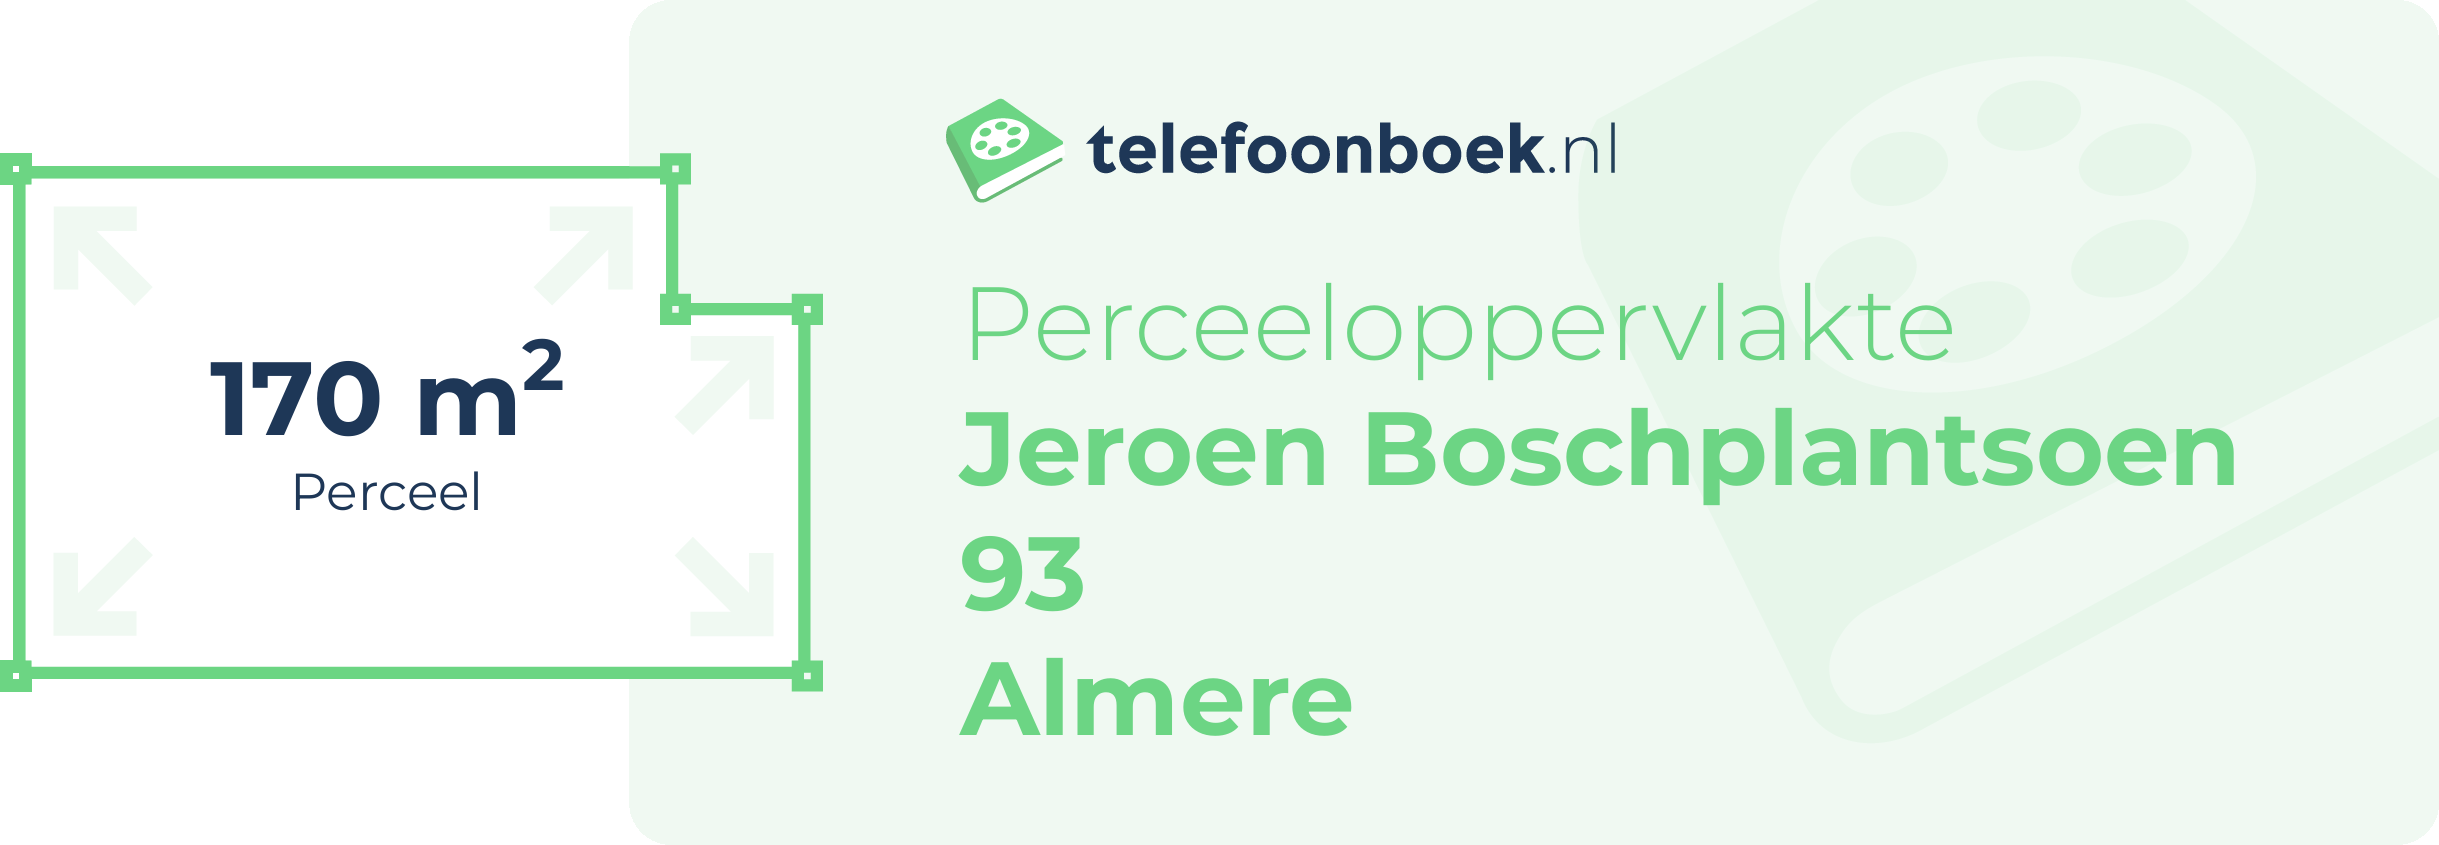 Perceeloppervlakte Jeroen Boschplantsoen 93 Almere